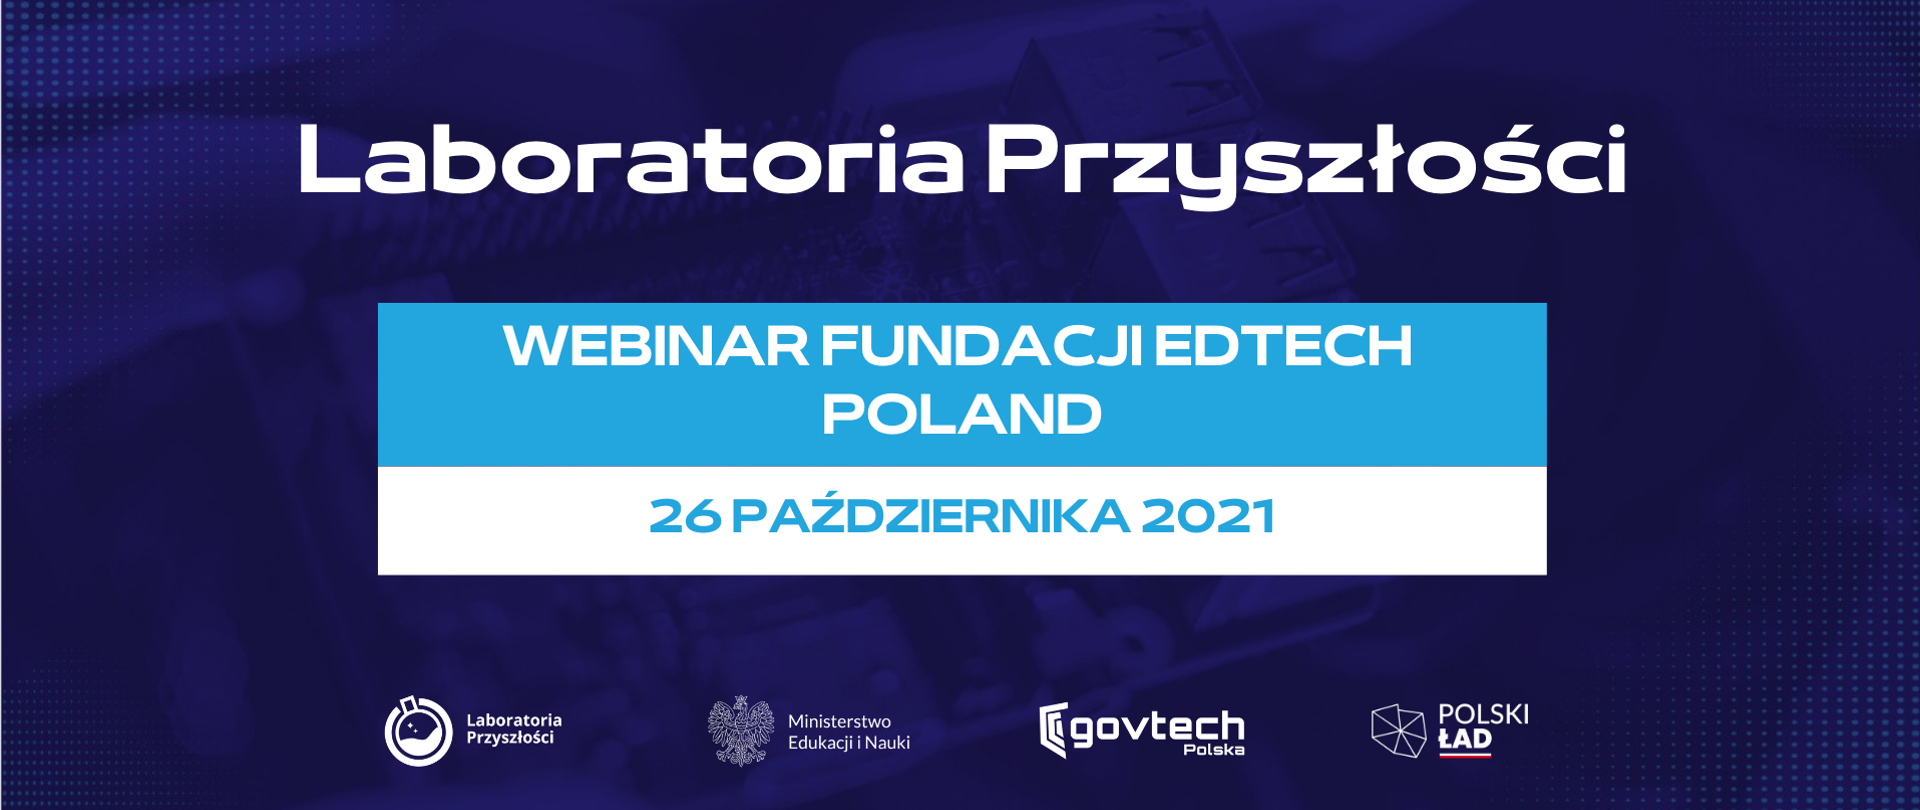 Laboratoria Przyszłości
Webinar Fundacji EdTech Poland
26 października 2021